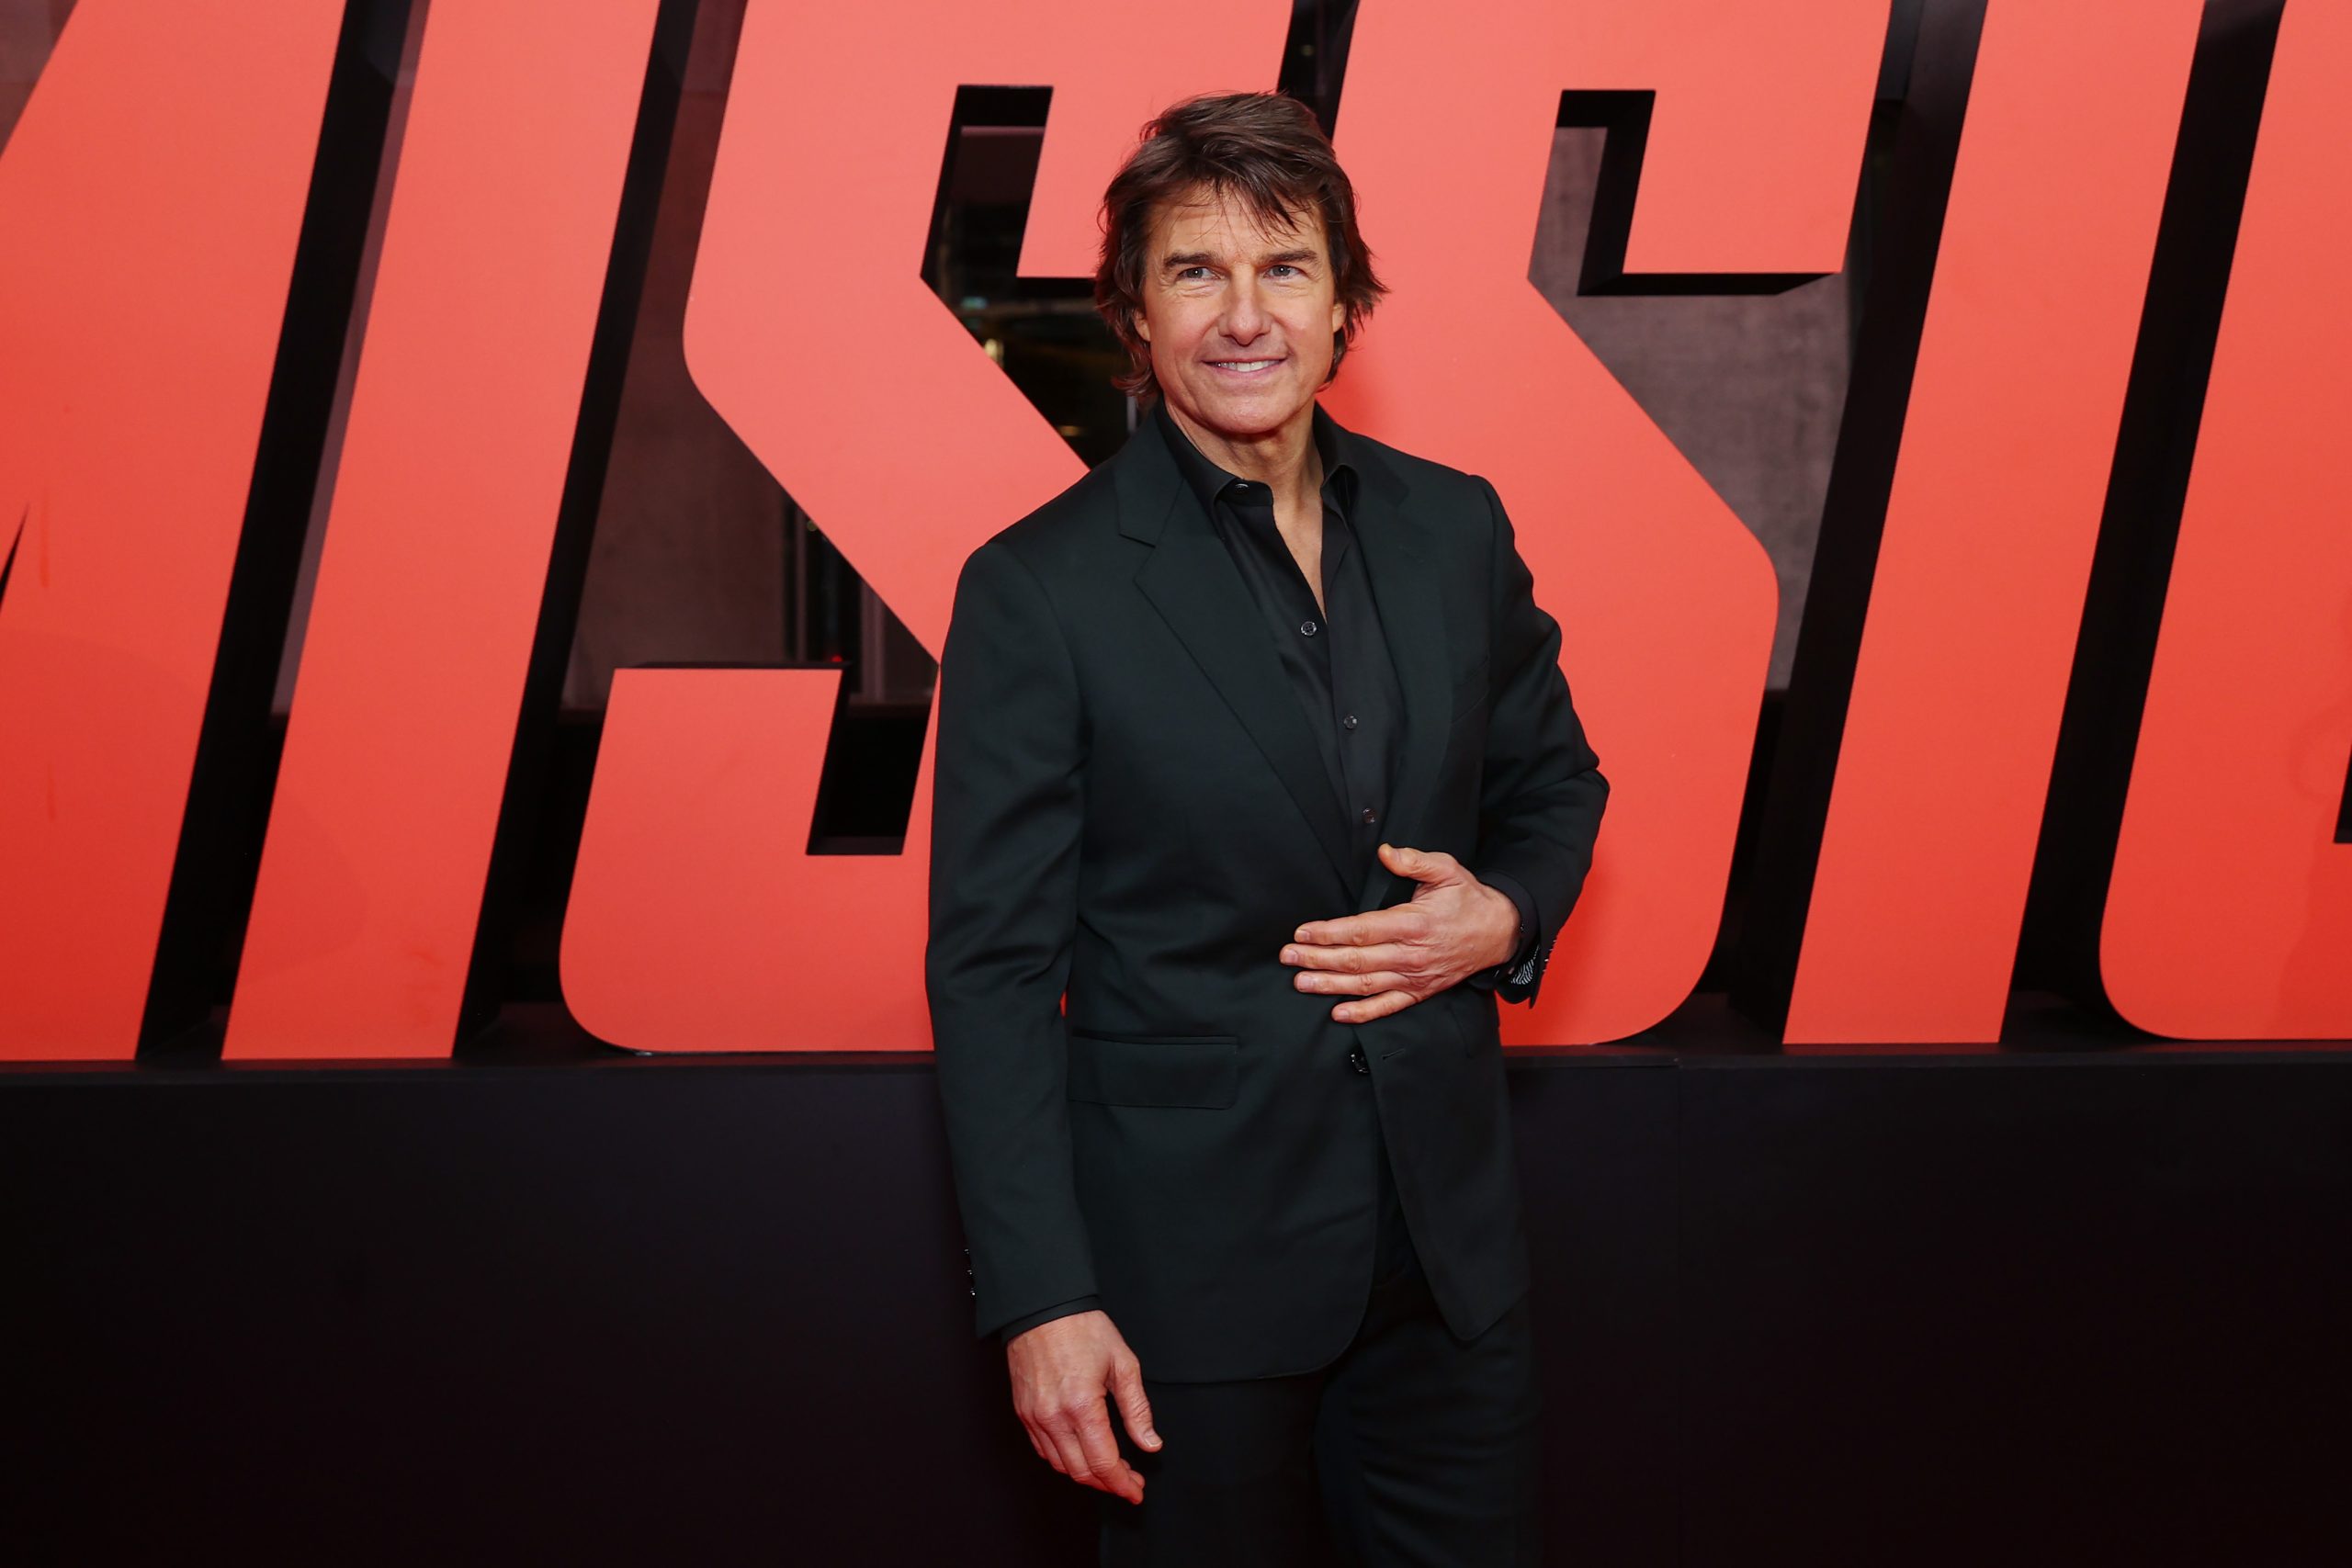 Tom Cruise ritkán látott fiával sétálgatott New Yorkban